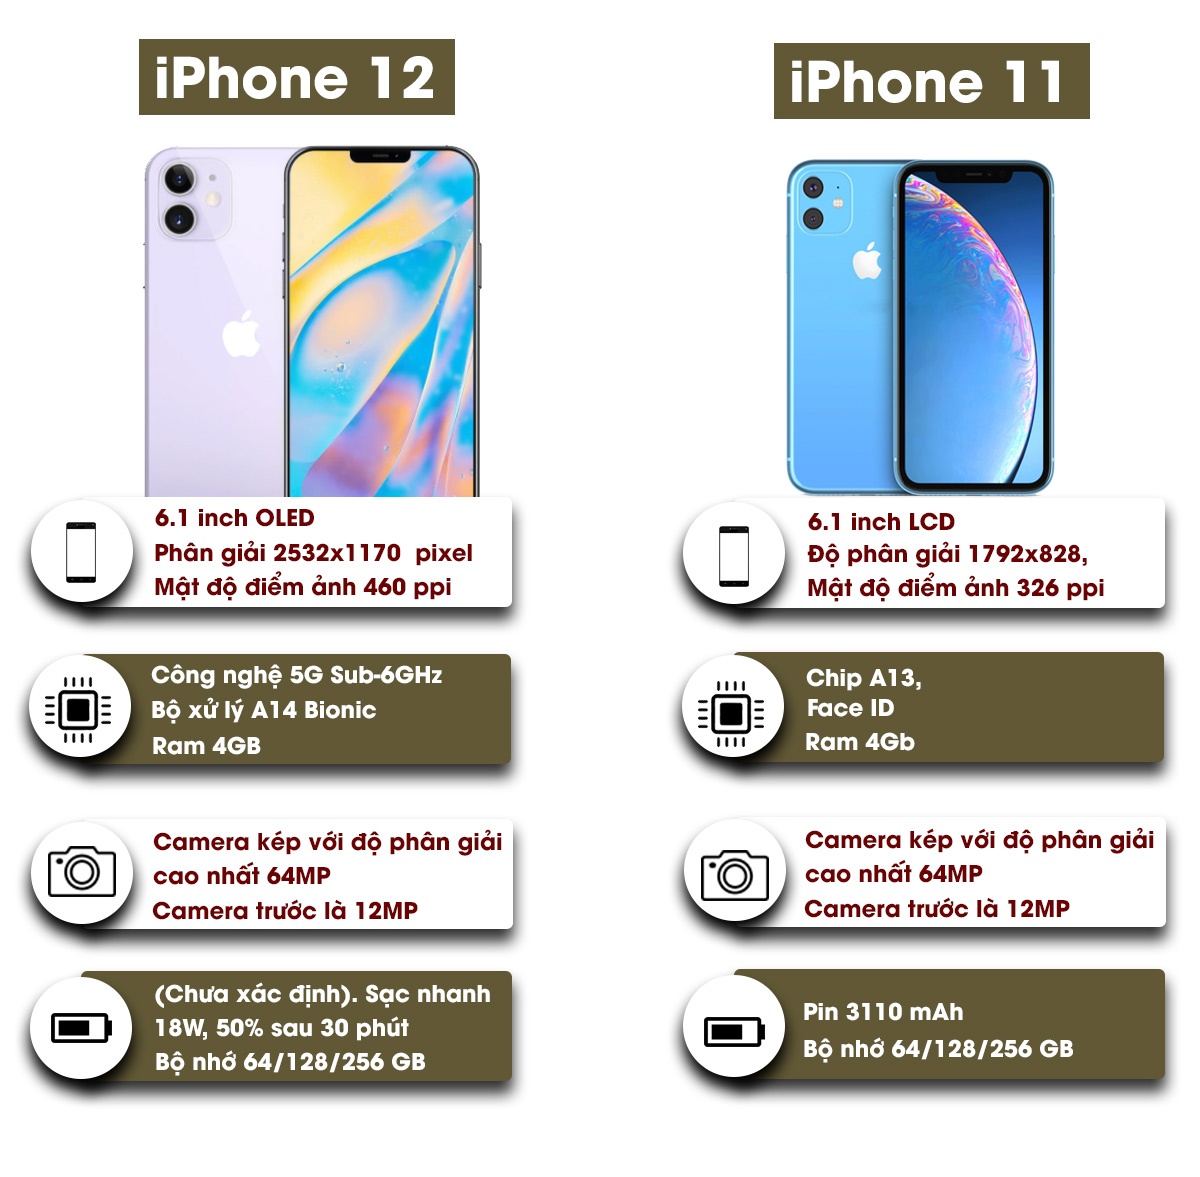 Đây là những điểm khác biệt giữa iPhone 12 và iPhone 11 - 5